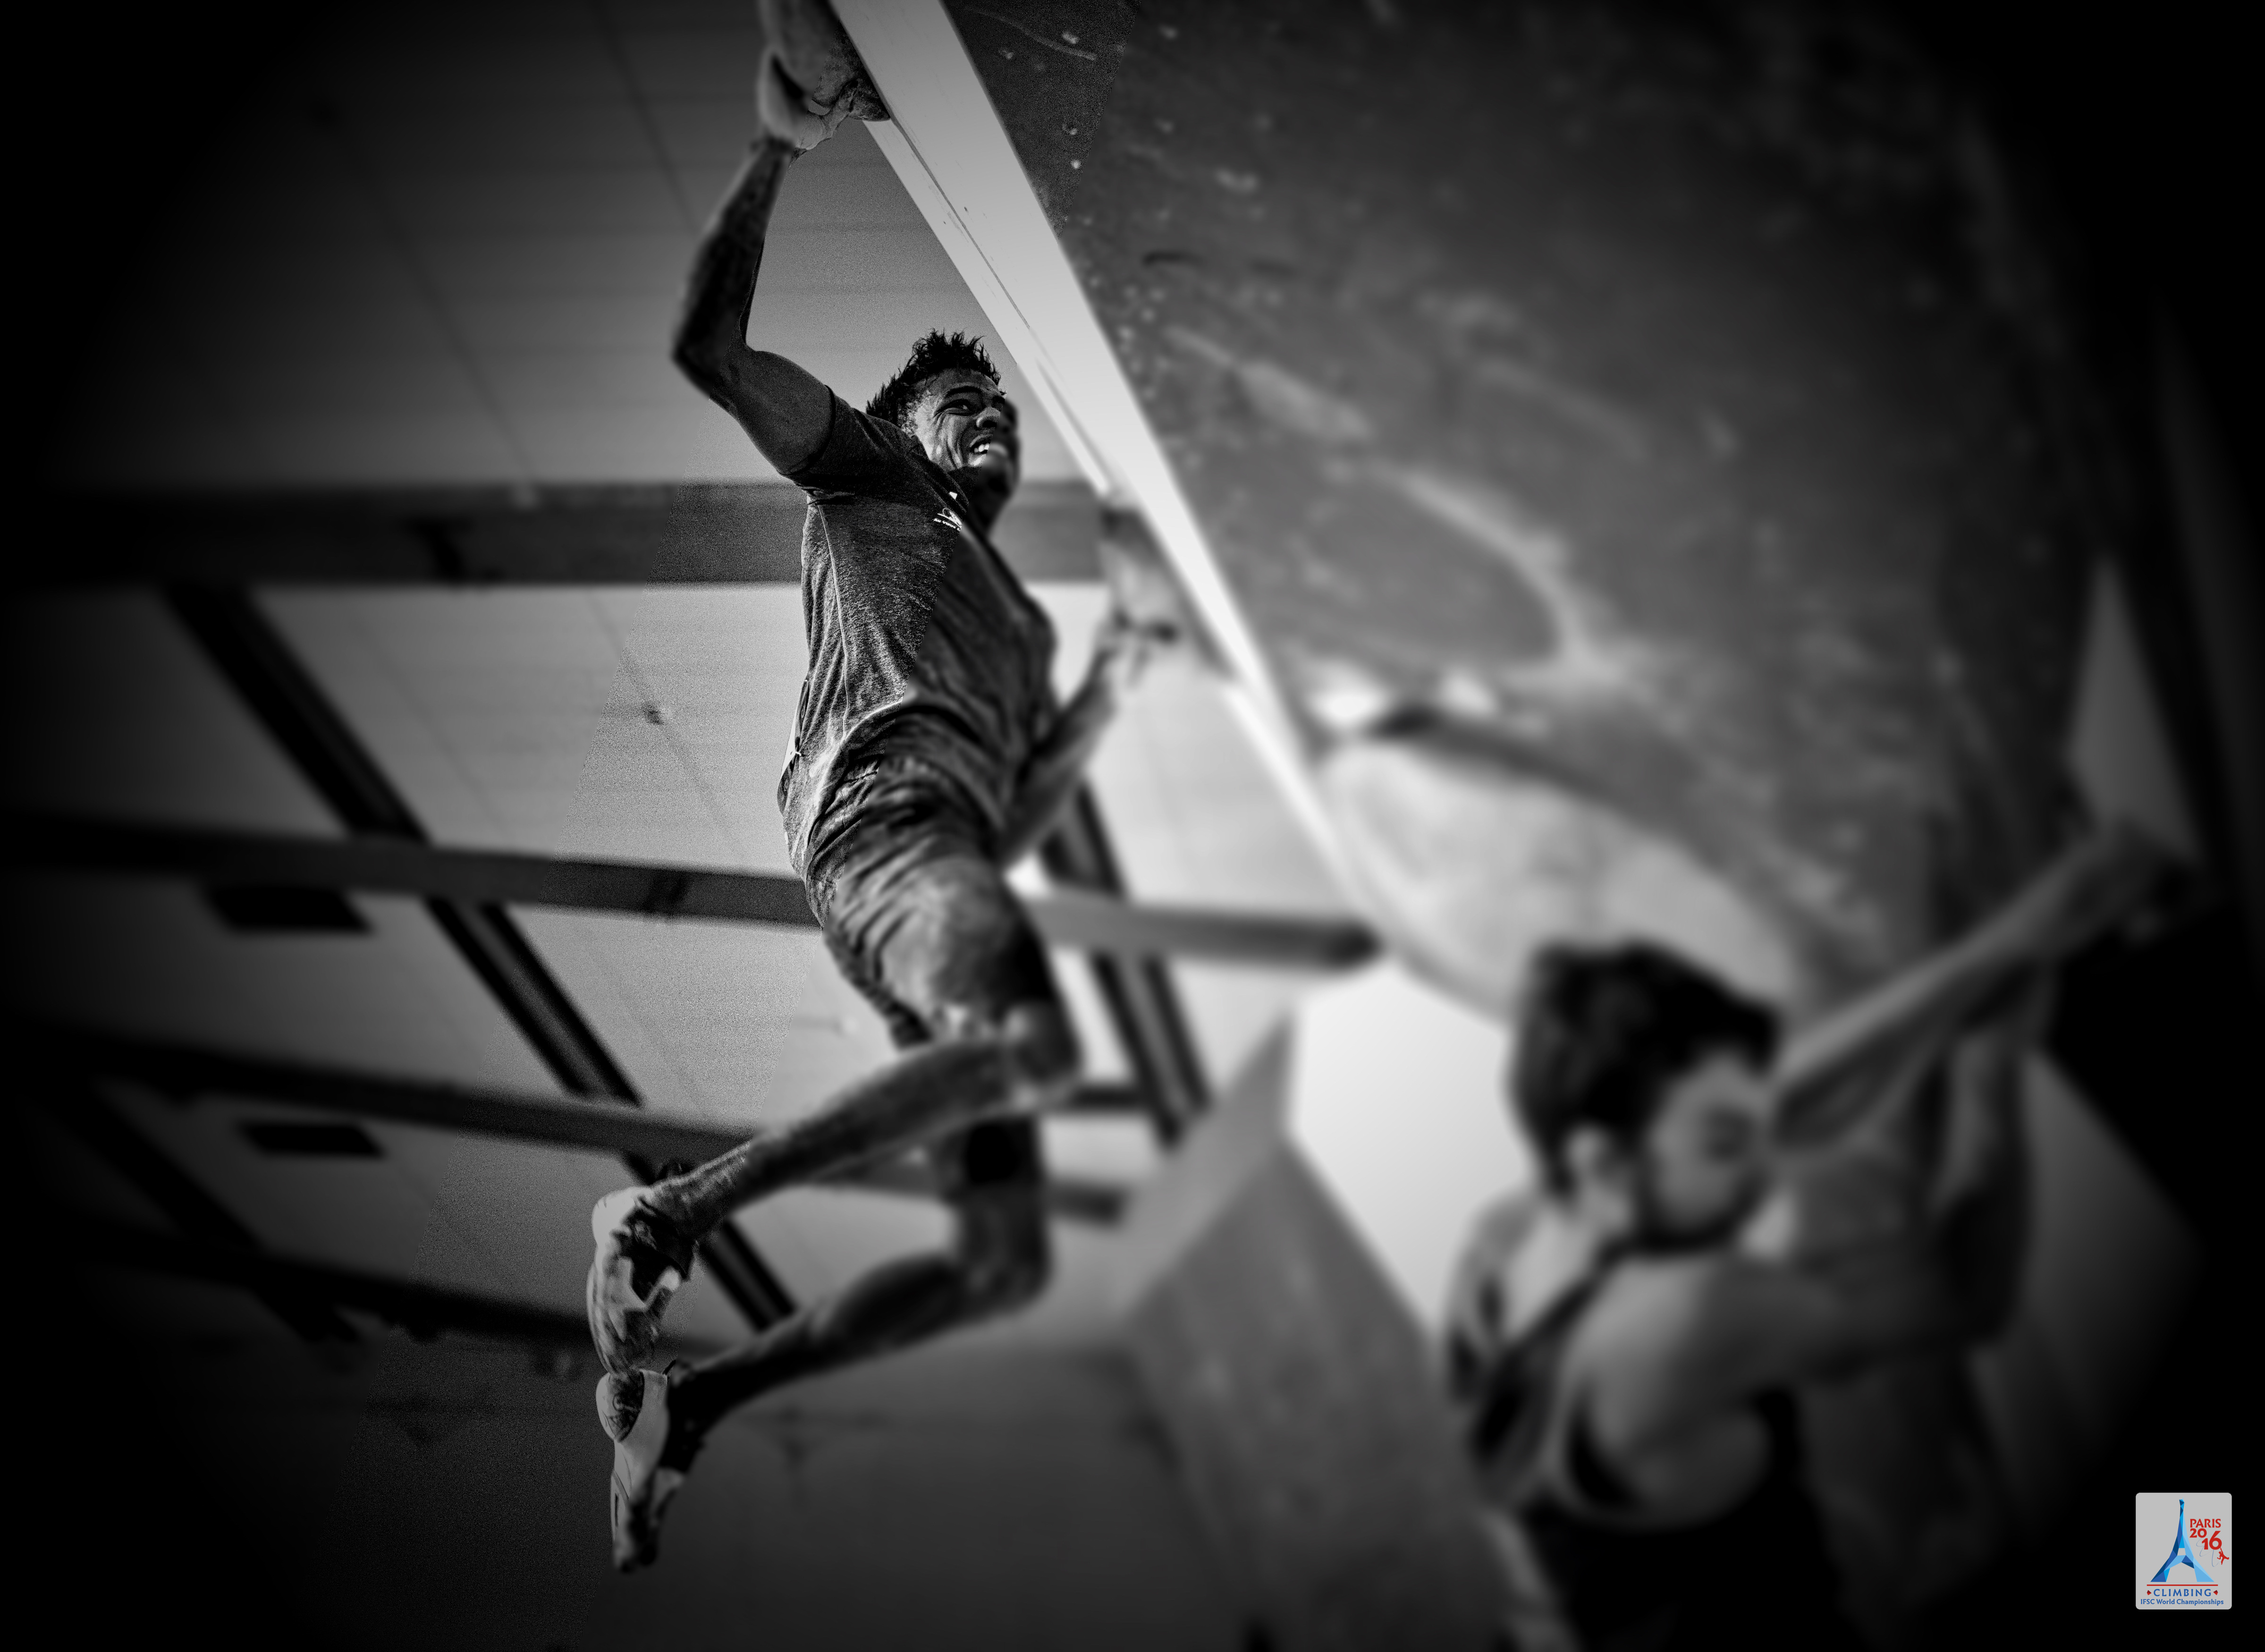 Чемпионат Мира по скалолазанию в Париже 2016. Дисциплина боулдеринг (квалификационный раунд среди мужчин):